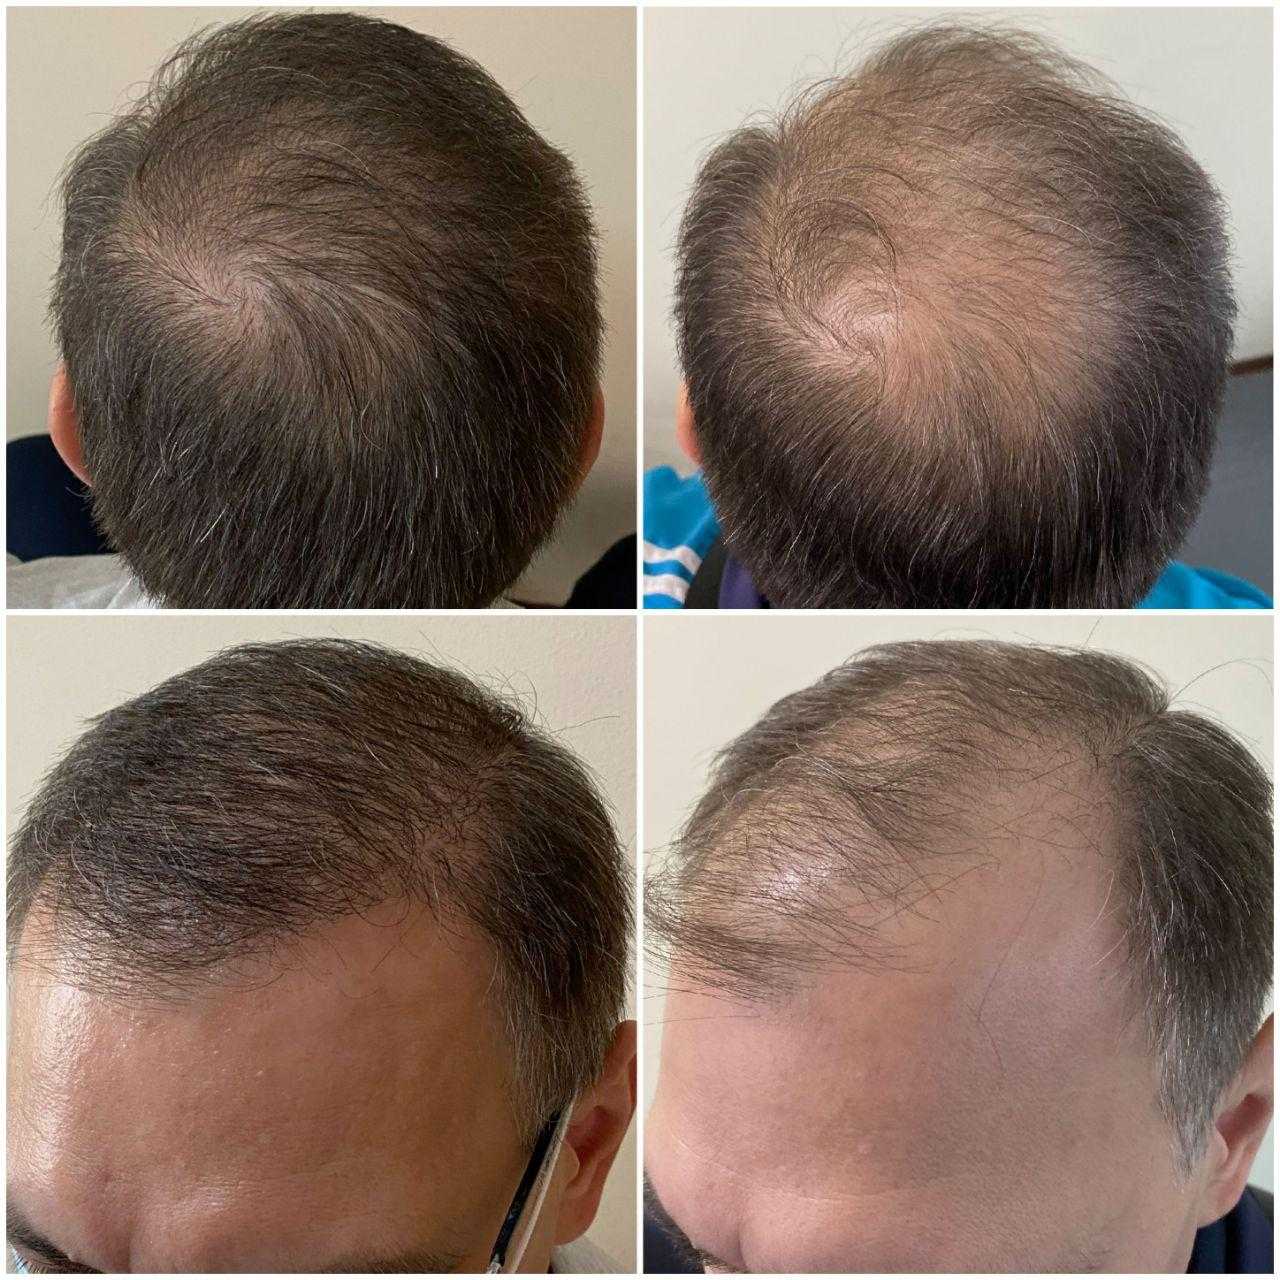 Пересадка волос красноярск. Графт трансплантация волос. Пересадка волос до и после. Трансплантация волос методом fue.